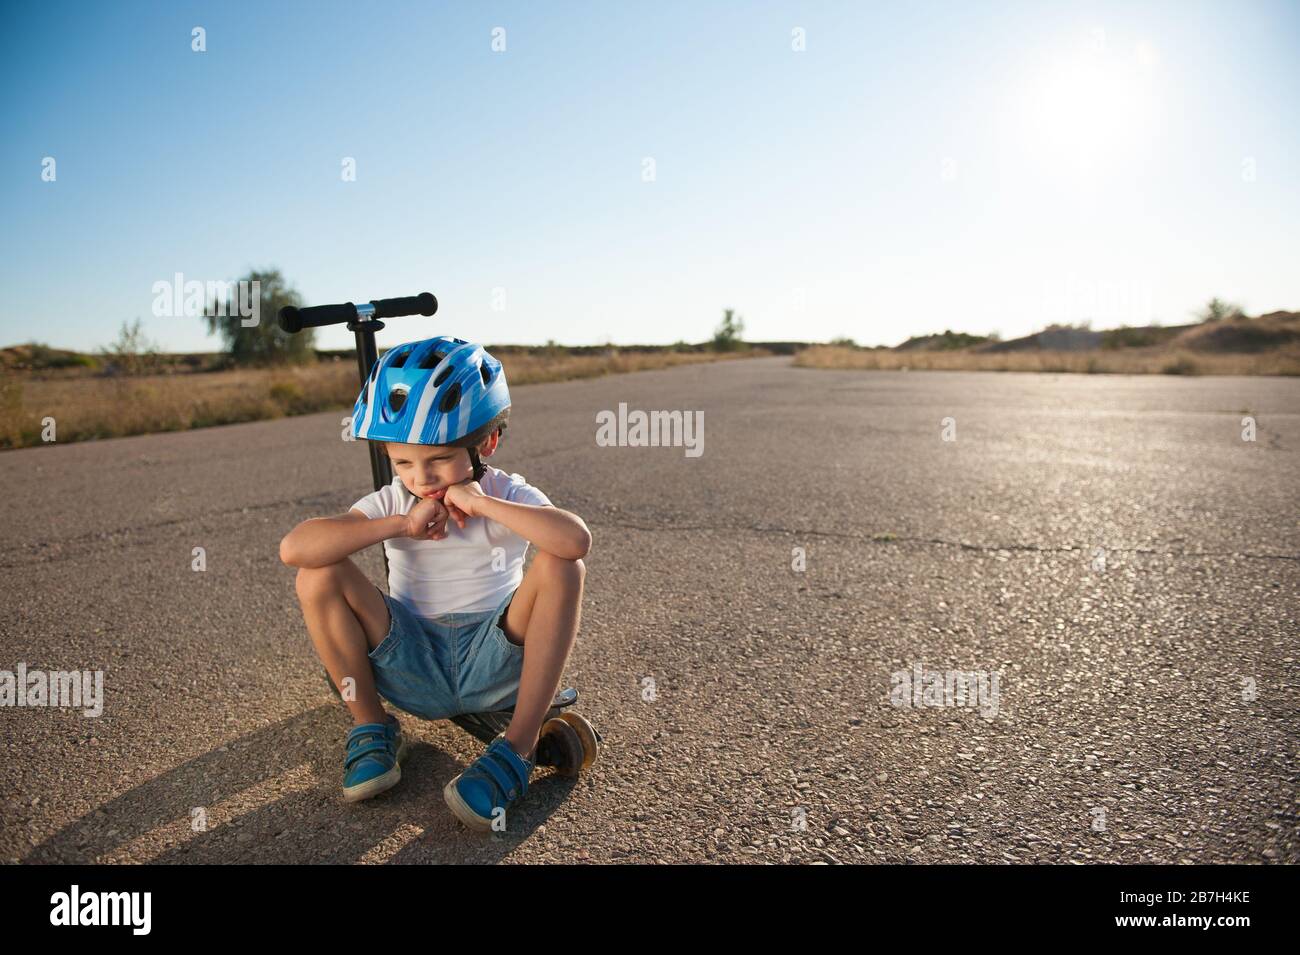 Trauriges kleines aktives Kind im Sport Schutzhelm einsam auf Roller auf leerer Wüstensommerasphalt-Straße bei heißem Sonnenuntergang sitzen Stockfoto